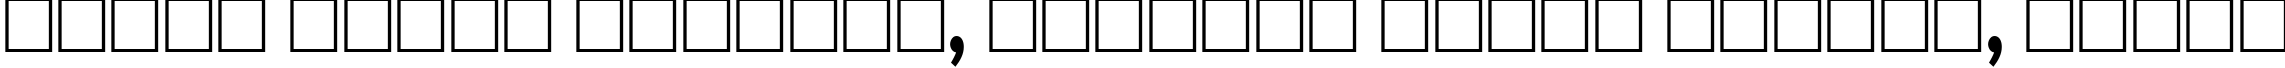 Пример написания шрифтом Aardvark80n текста на белорусском